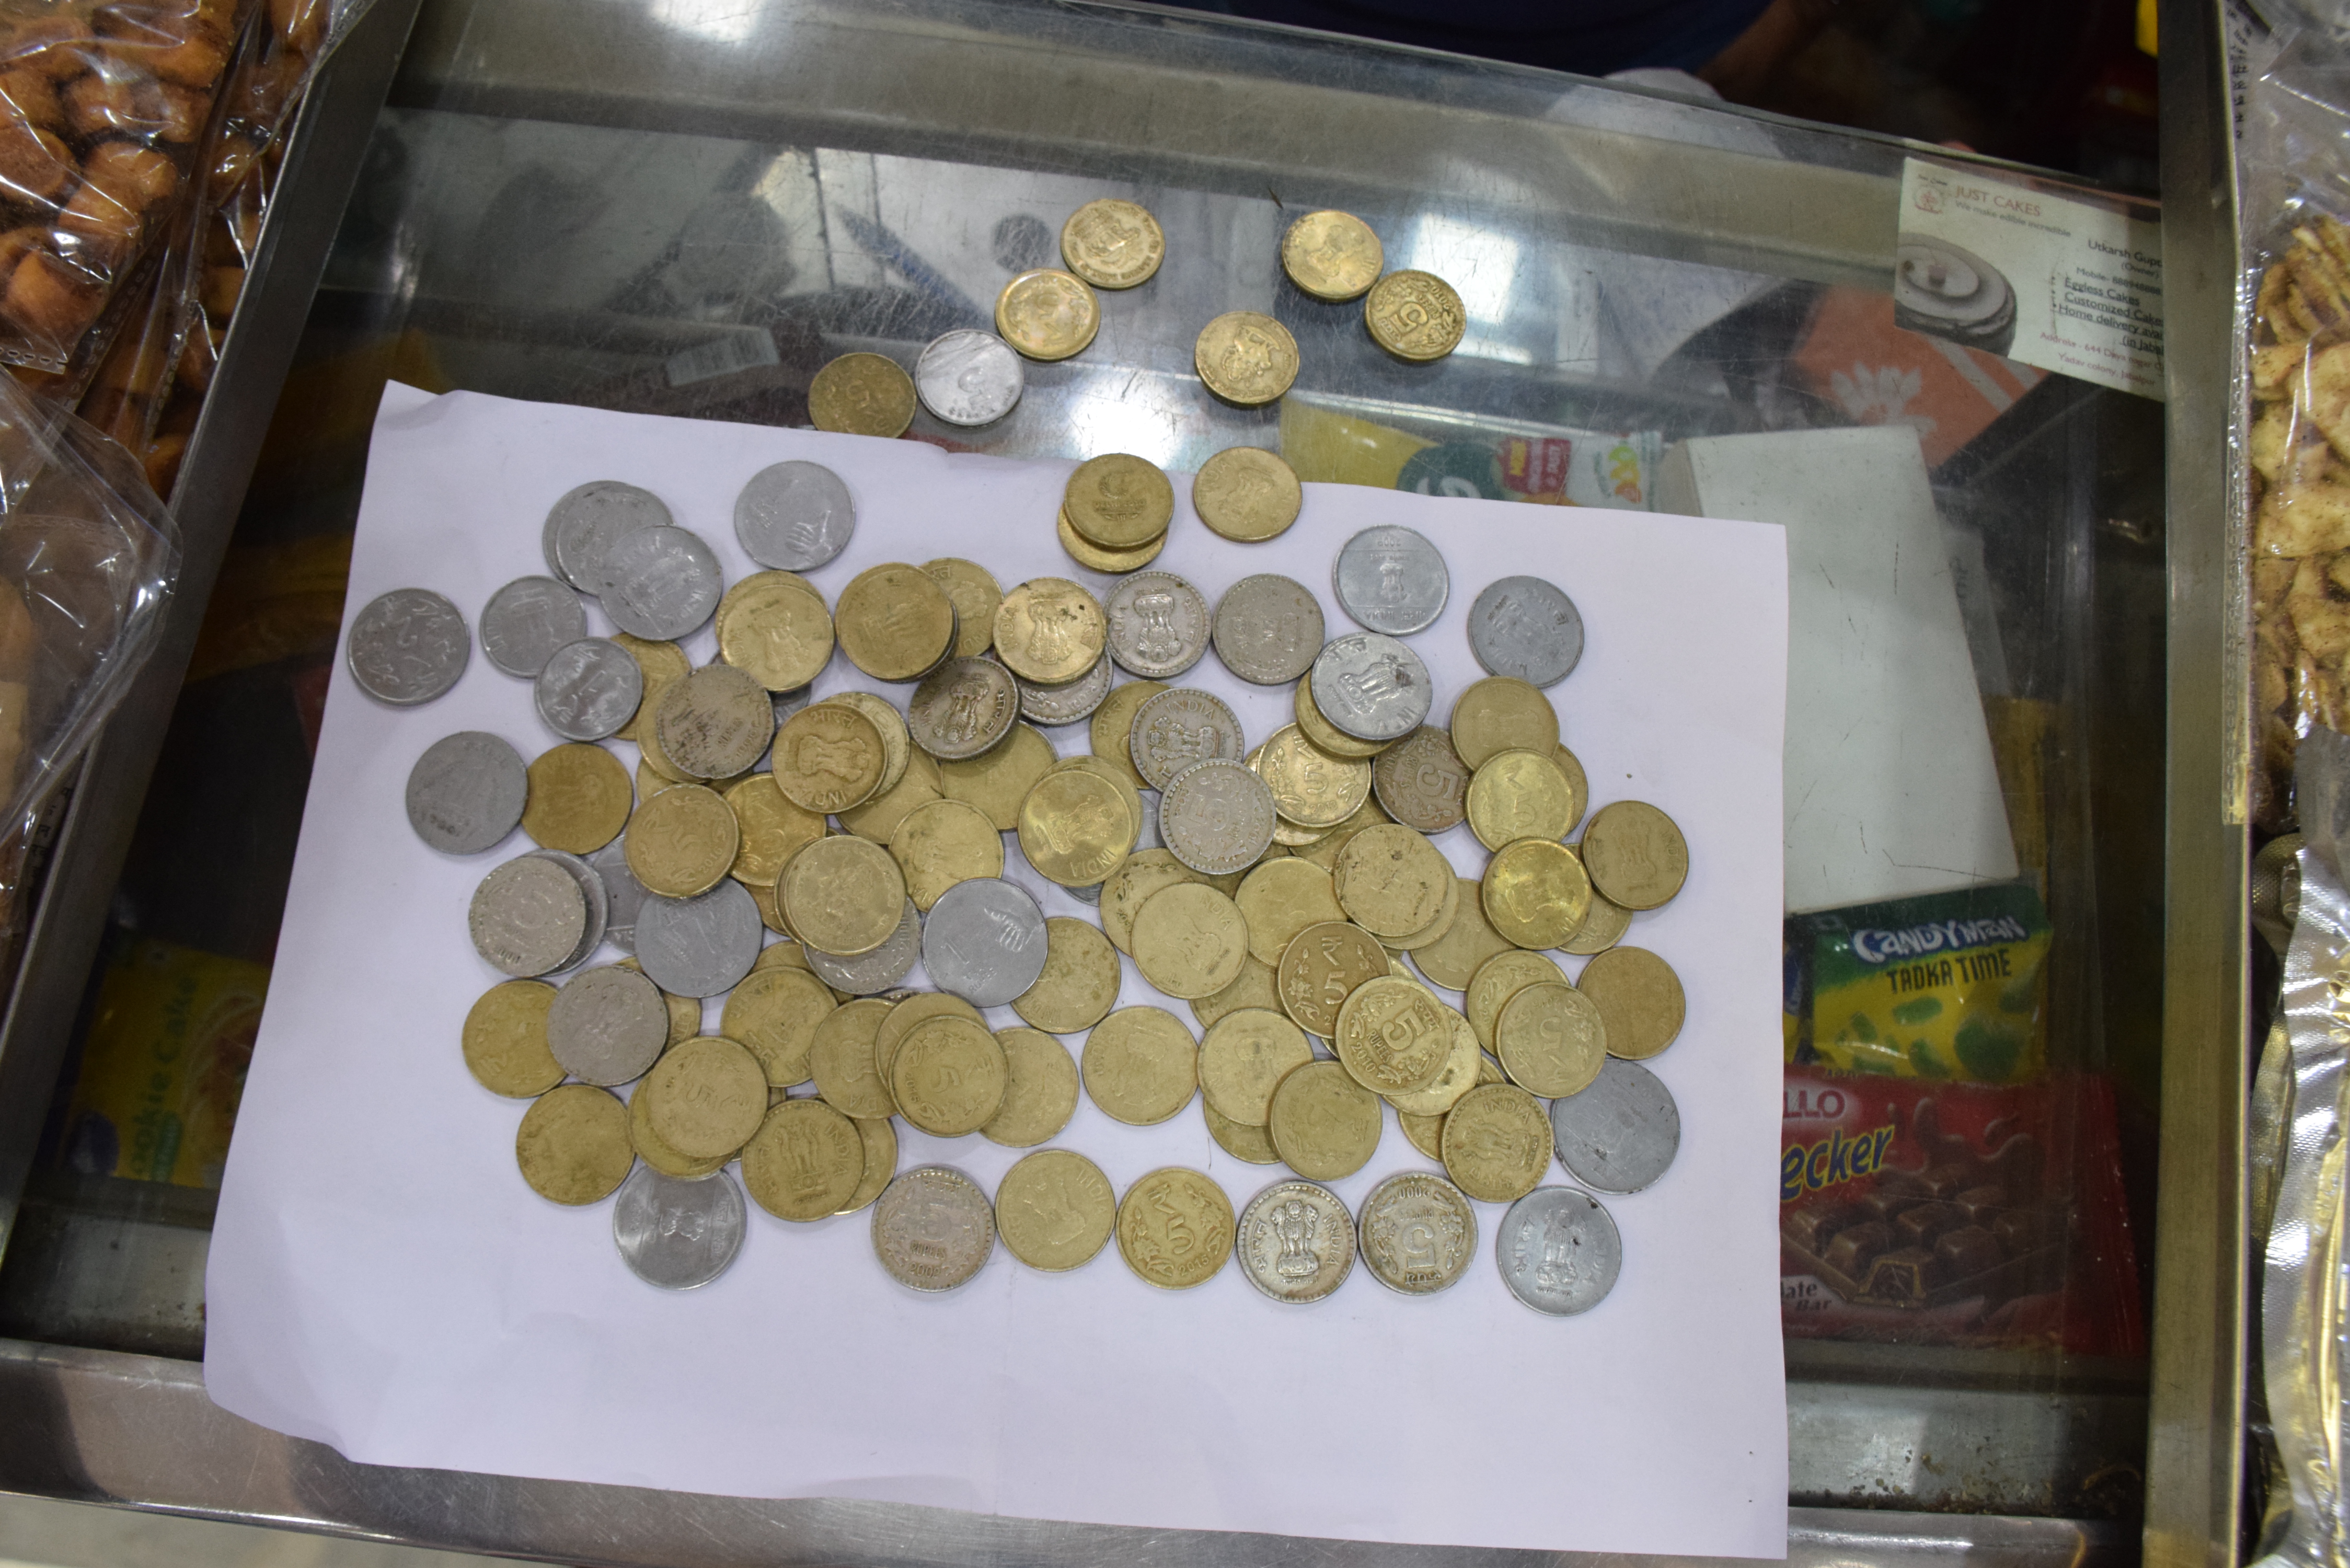 शहर में एक और दो रुपए के सिक्कों के लेनदेन में आनाकानी बढ़ती जा रही है। आम आदमी हो या बैंक, सिक्कों की मात्रा अधिक होने पर लेने से इनकार कर देते हैं।